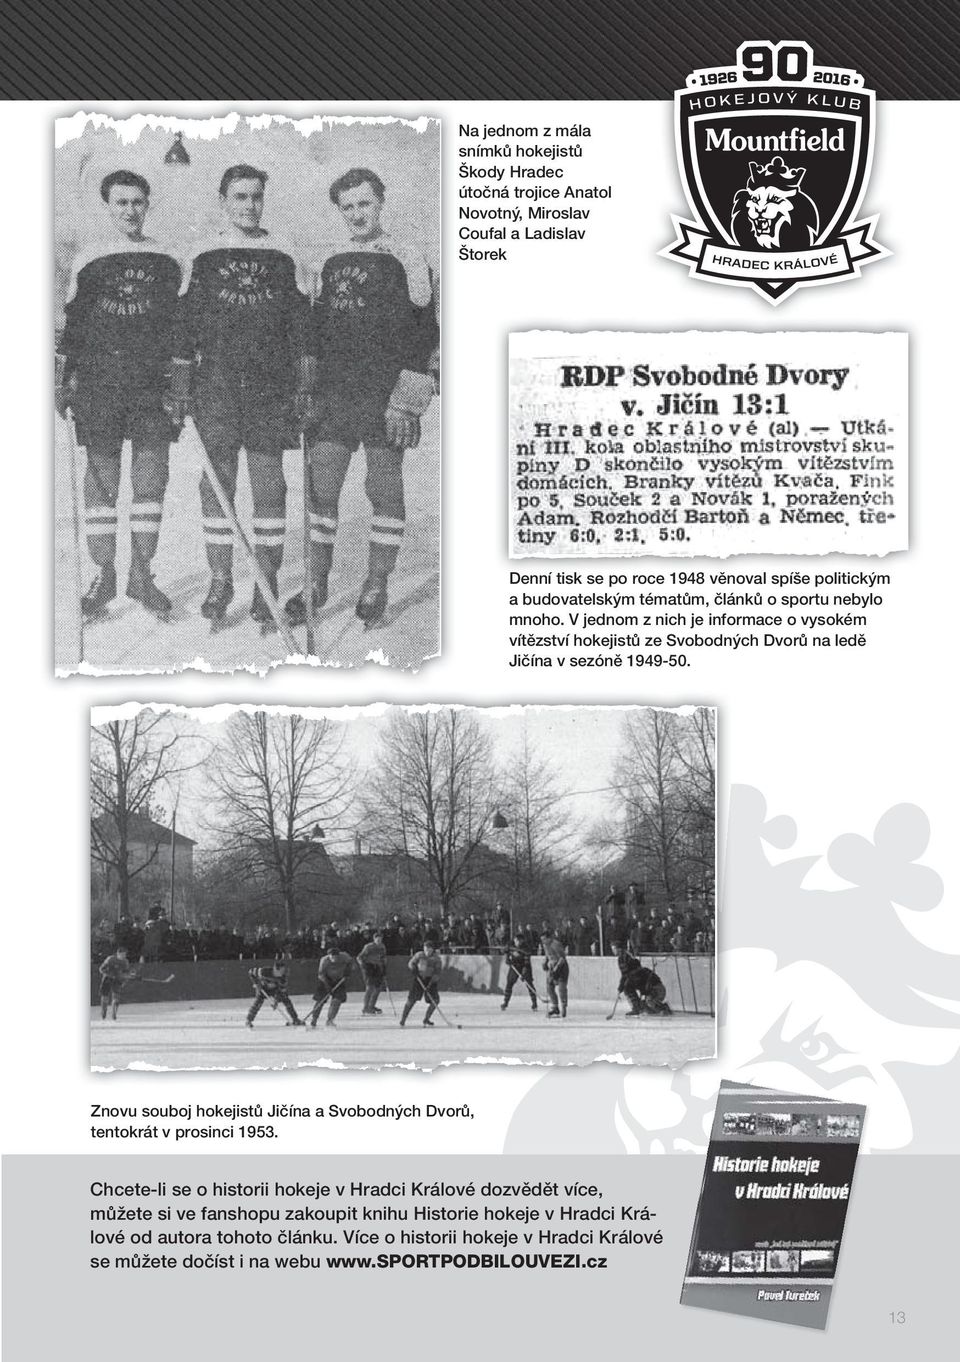 V jednom z nich je informace o vysokém vítězství hokejistů ze Svobodných Dvorů na ledě Jičína v sezóně 1949-50.